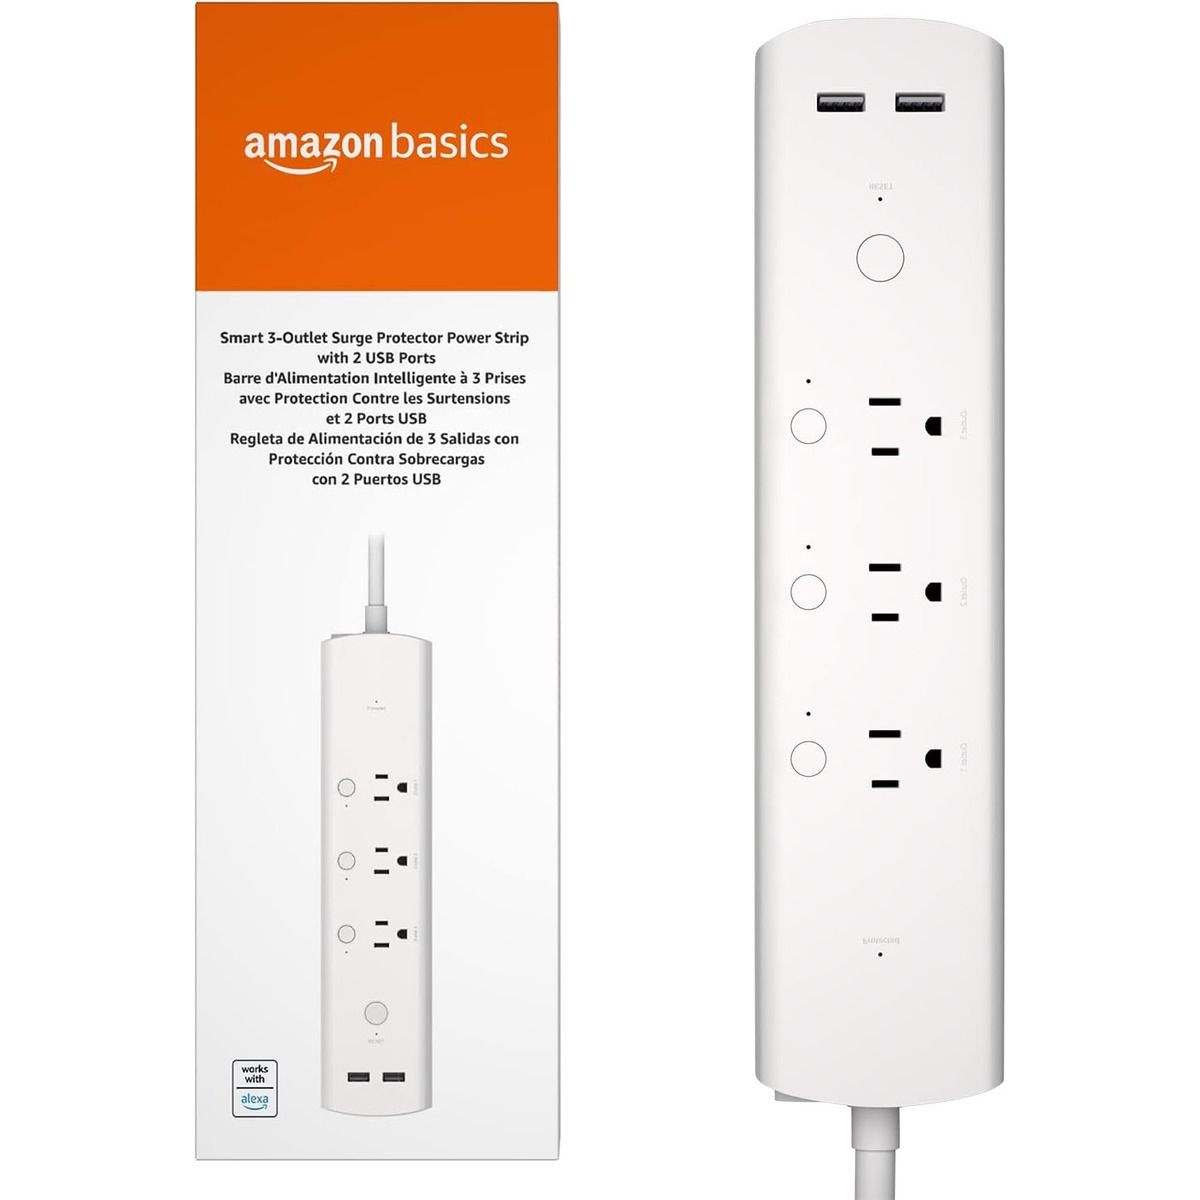 The Amazon Basics Smart Plug against a white background